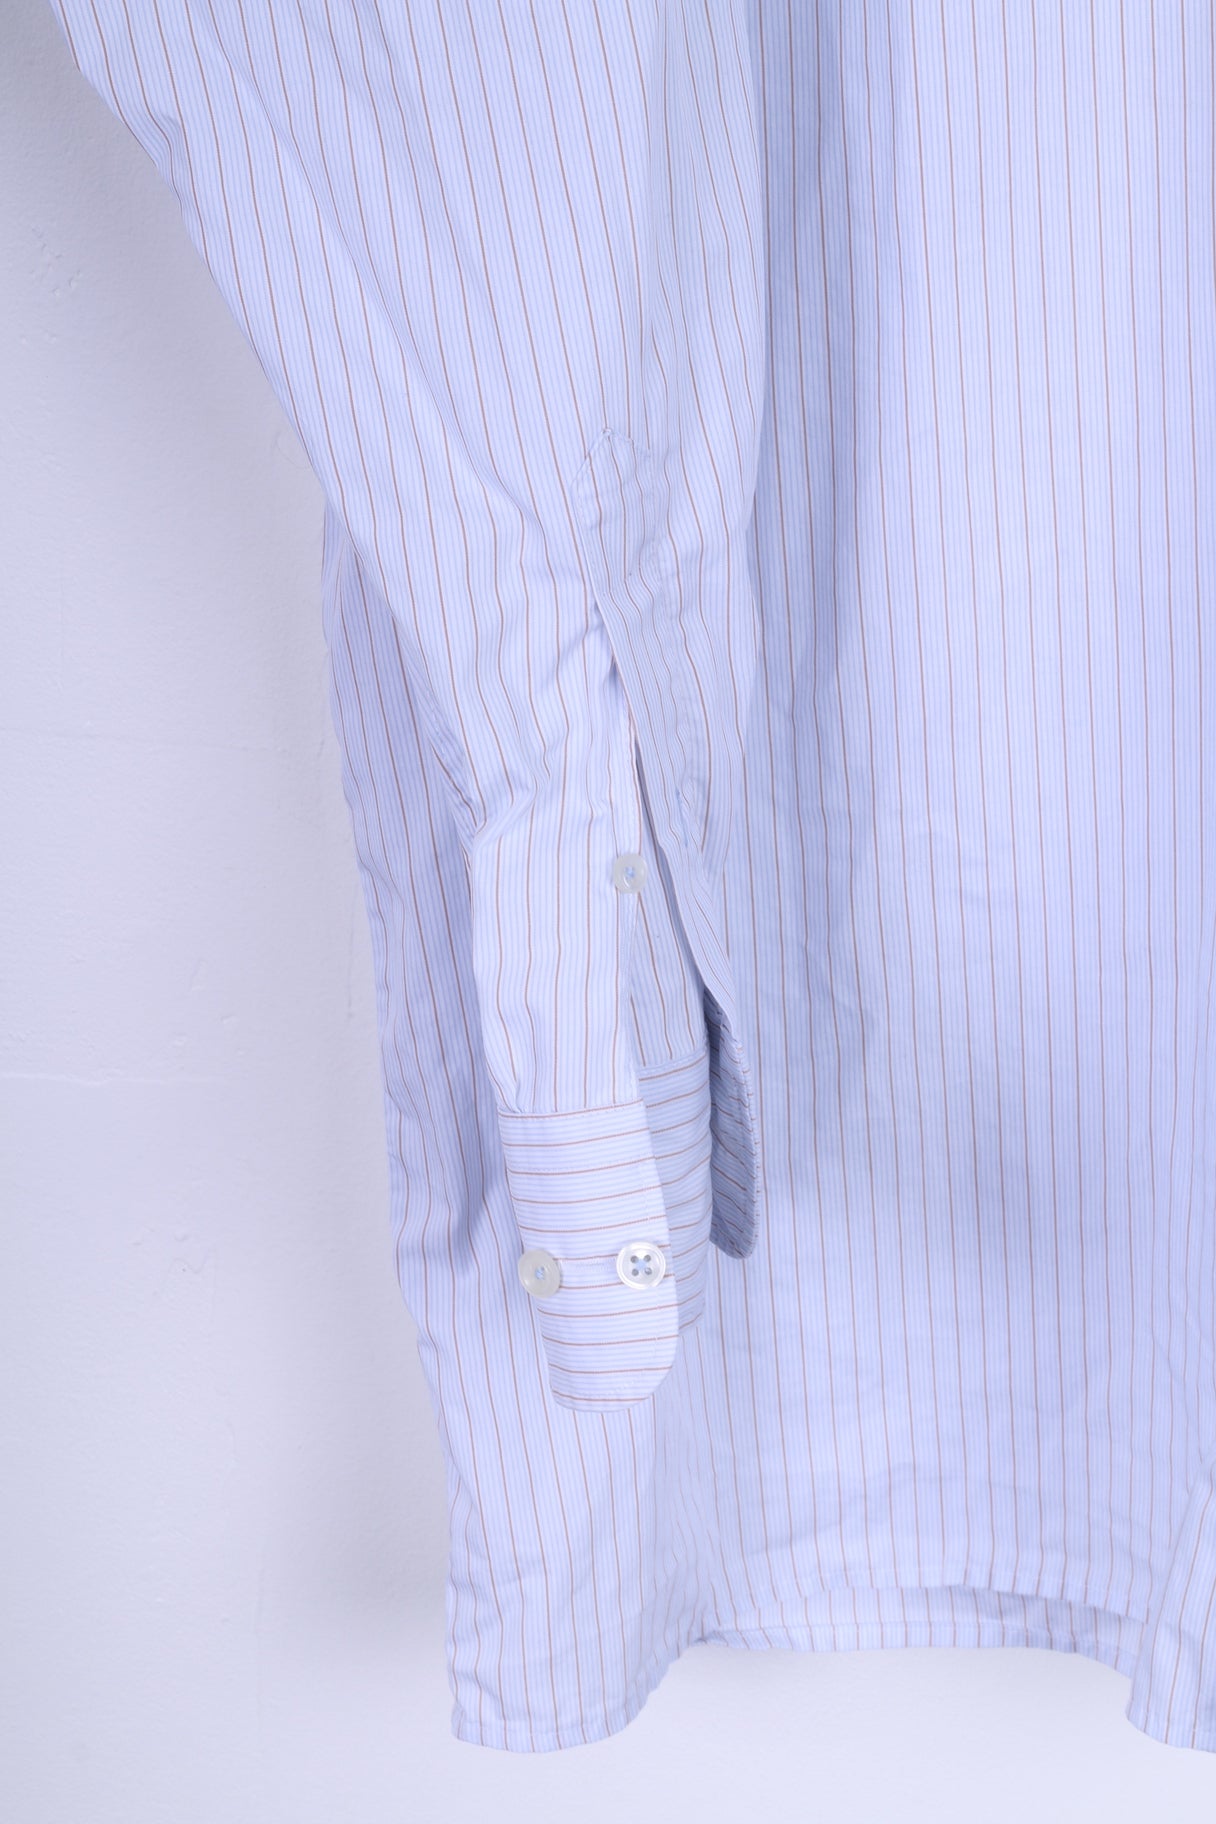 Seidensticker Mens 46 16 XXL Casual Shirt Blue Striped Cotton Long Sleeve